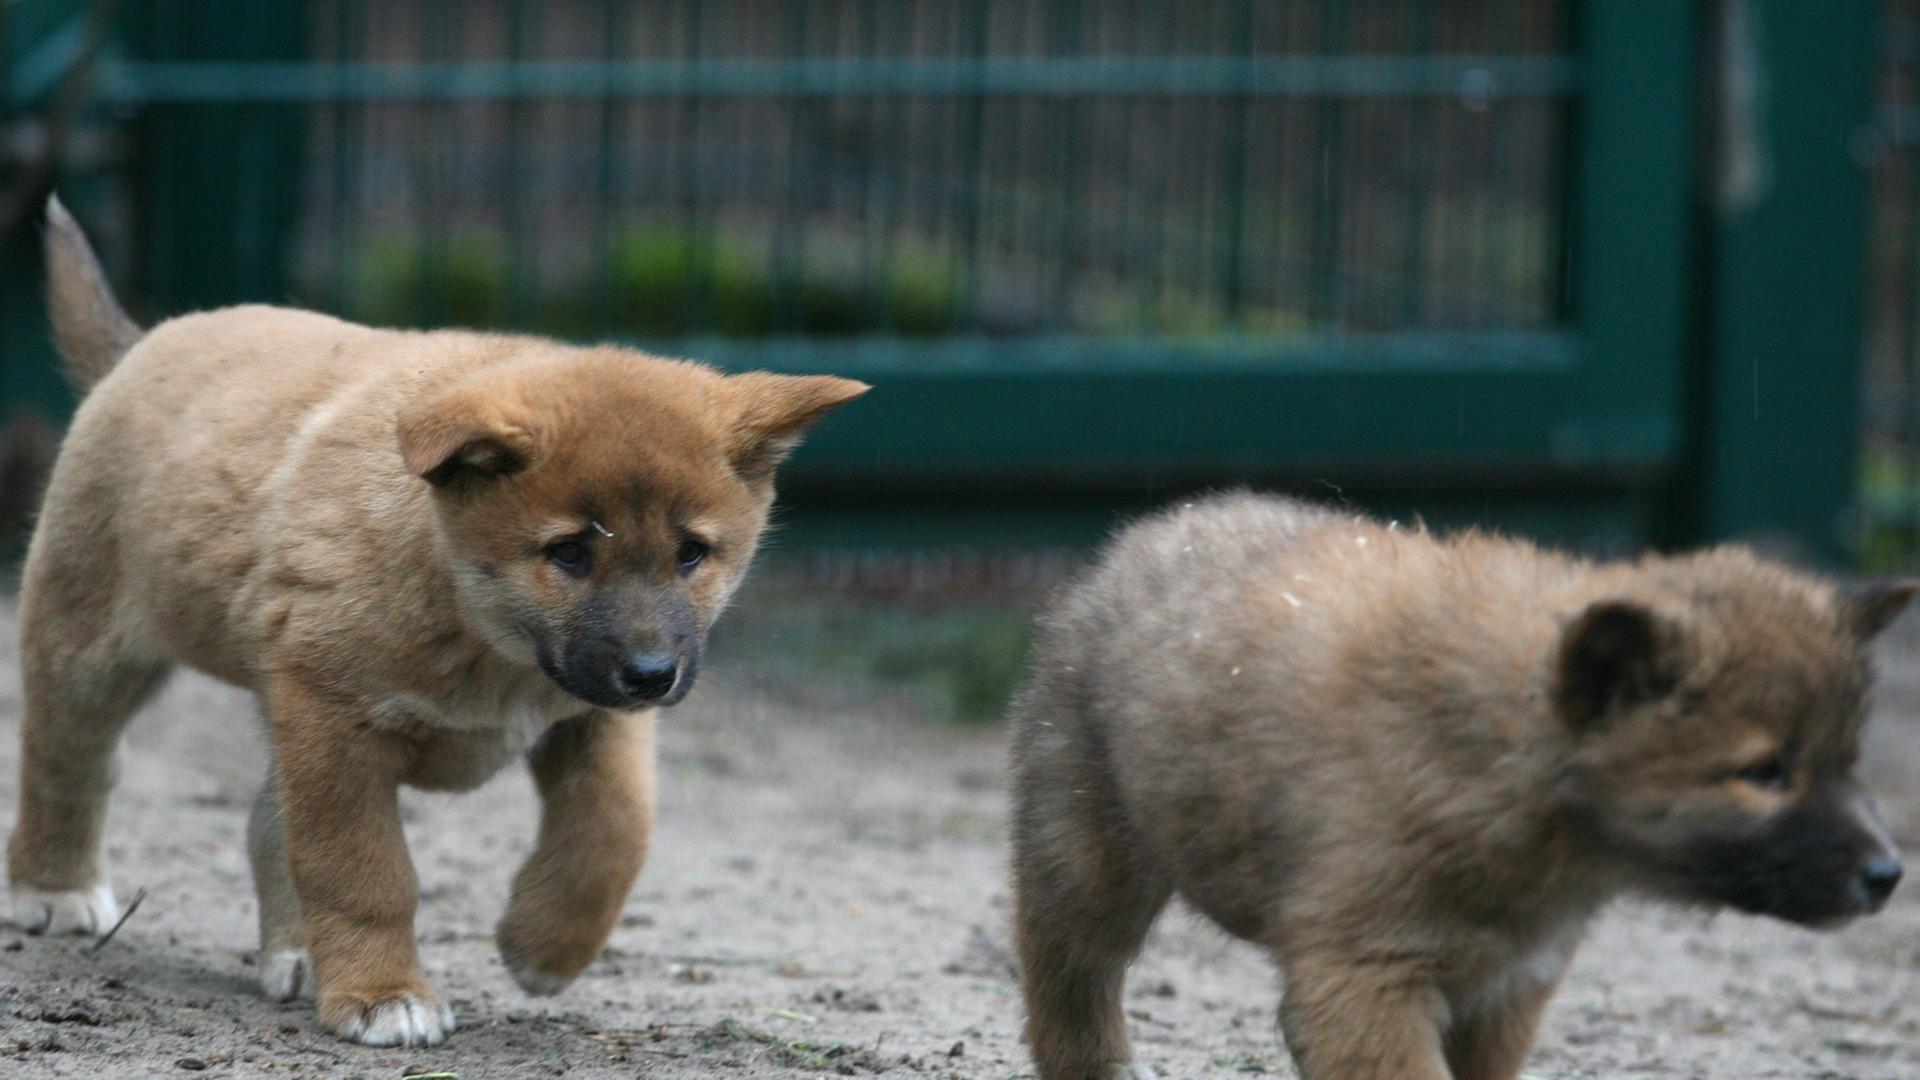 Zwei kleine Dingowelpen laufen am Dienstag (28.02.2012) im Tierpark Friedrichsfelde in Berlin durch ihr Gehege. Insgesamt vier Jungtiere wurden bei den Dingos am 03. Januar geboren. Dingos sind verwilderte Haushunde, und gelten als einziges wildlebendes Raubtier Australiens, das kein Beuteltier ist.